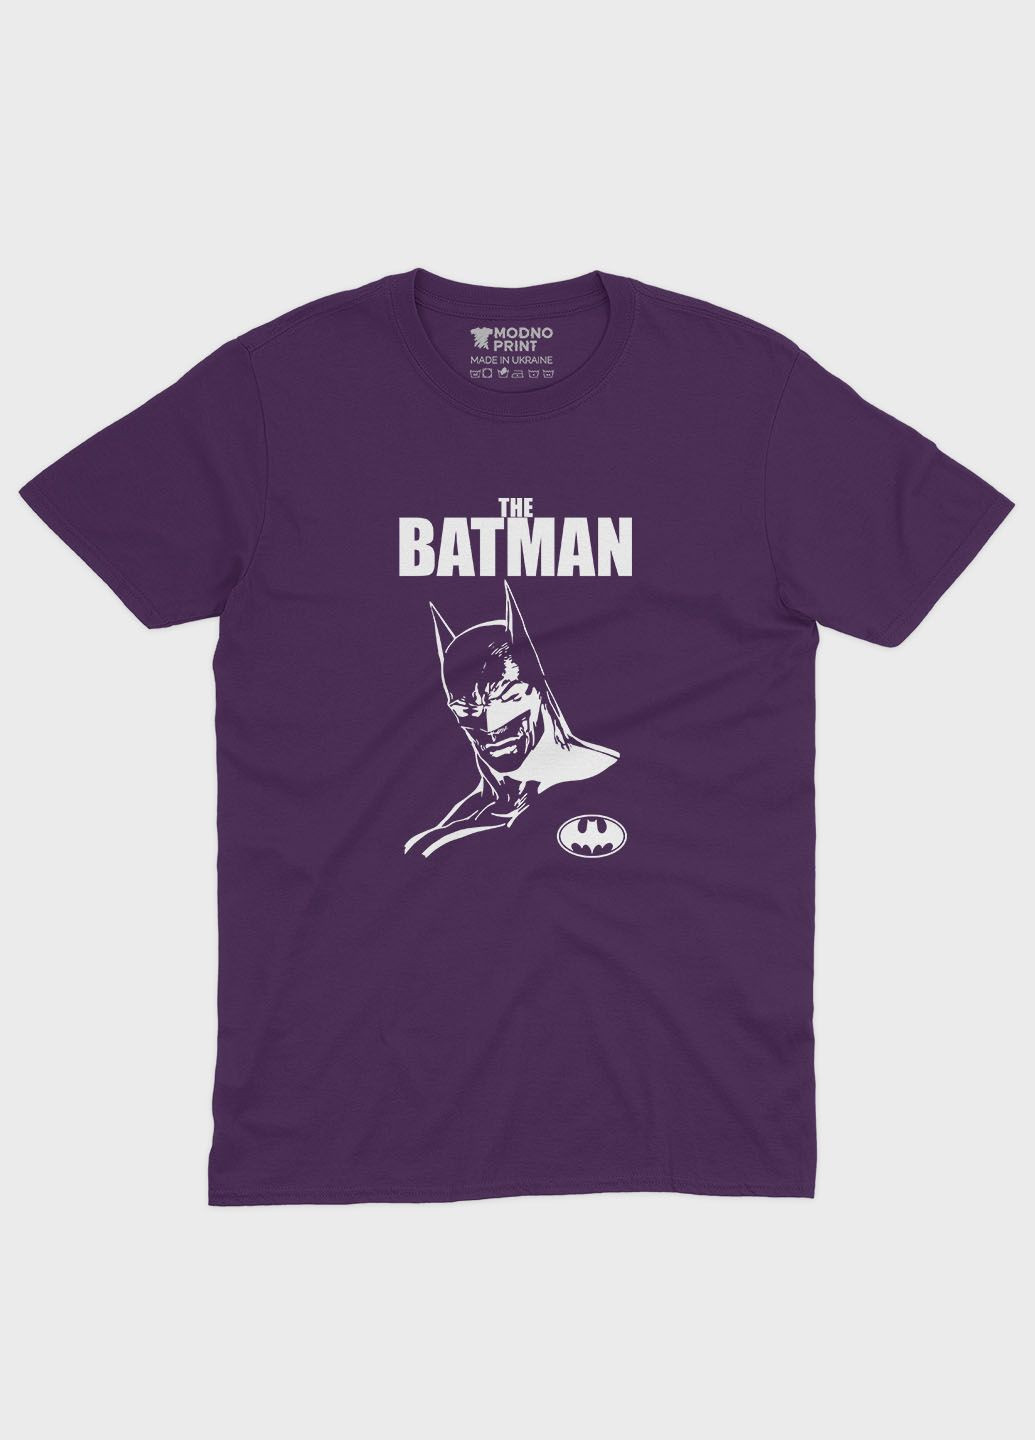 Фиолетовая демисезонная футболка для девочки с принтом супергероя - бэтмен (ts001-1-dby-006-003-009-g) Modno